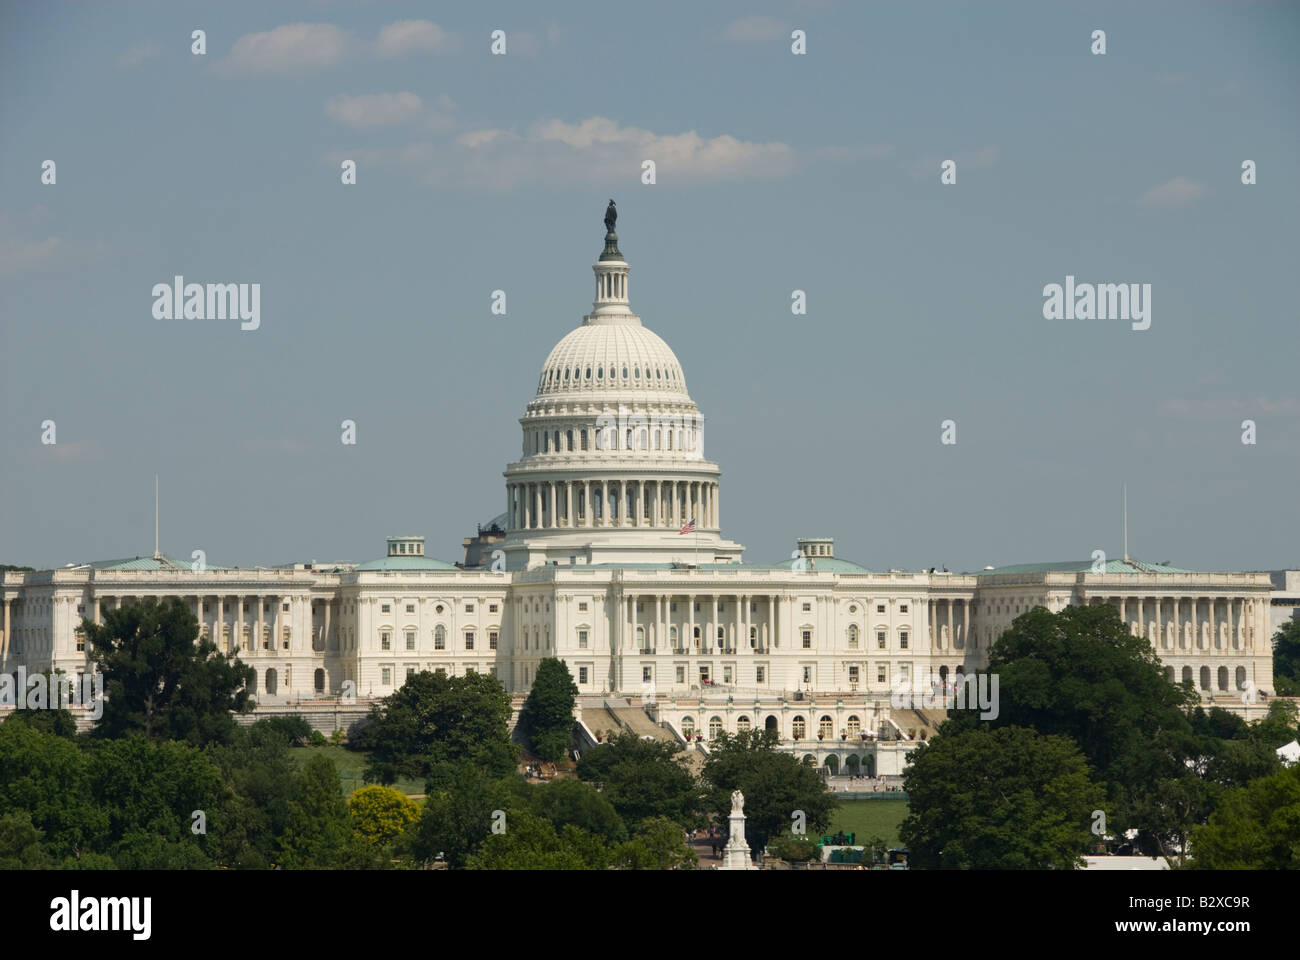 Le dôme du bâtiment du Capitole branche législative du gouvernement des États-Unis. Banque D'Images